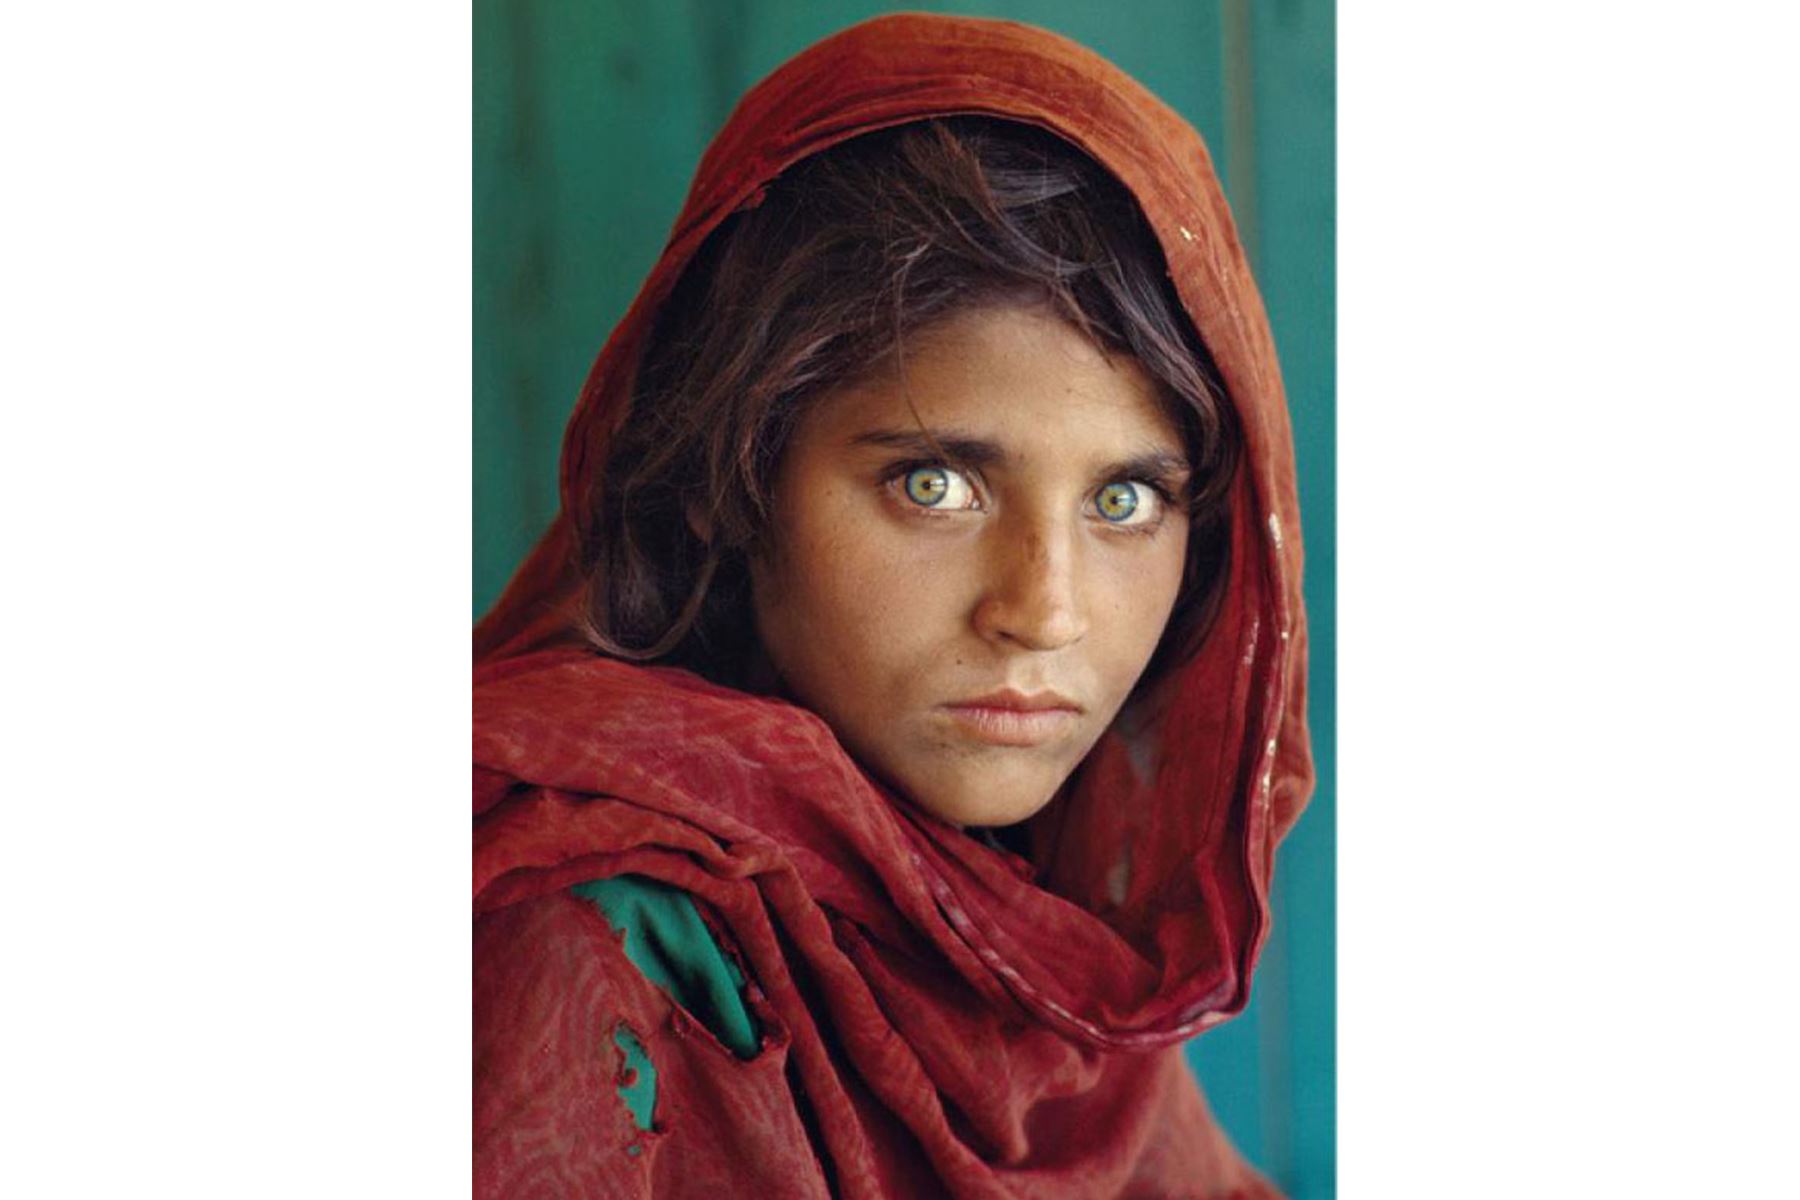 Imagen histórica tomada a la niña afgana Sharbat Gula . La imagen es inmortalizada por el fotógrafo estadounidense Steve McCurry y fue portada  en  la revista  National Geographic en 1985.
Foto: Steve McCurry / National Geographic